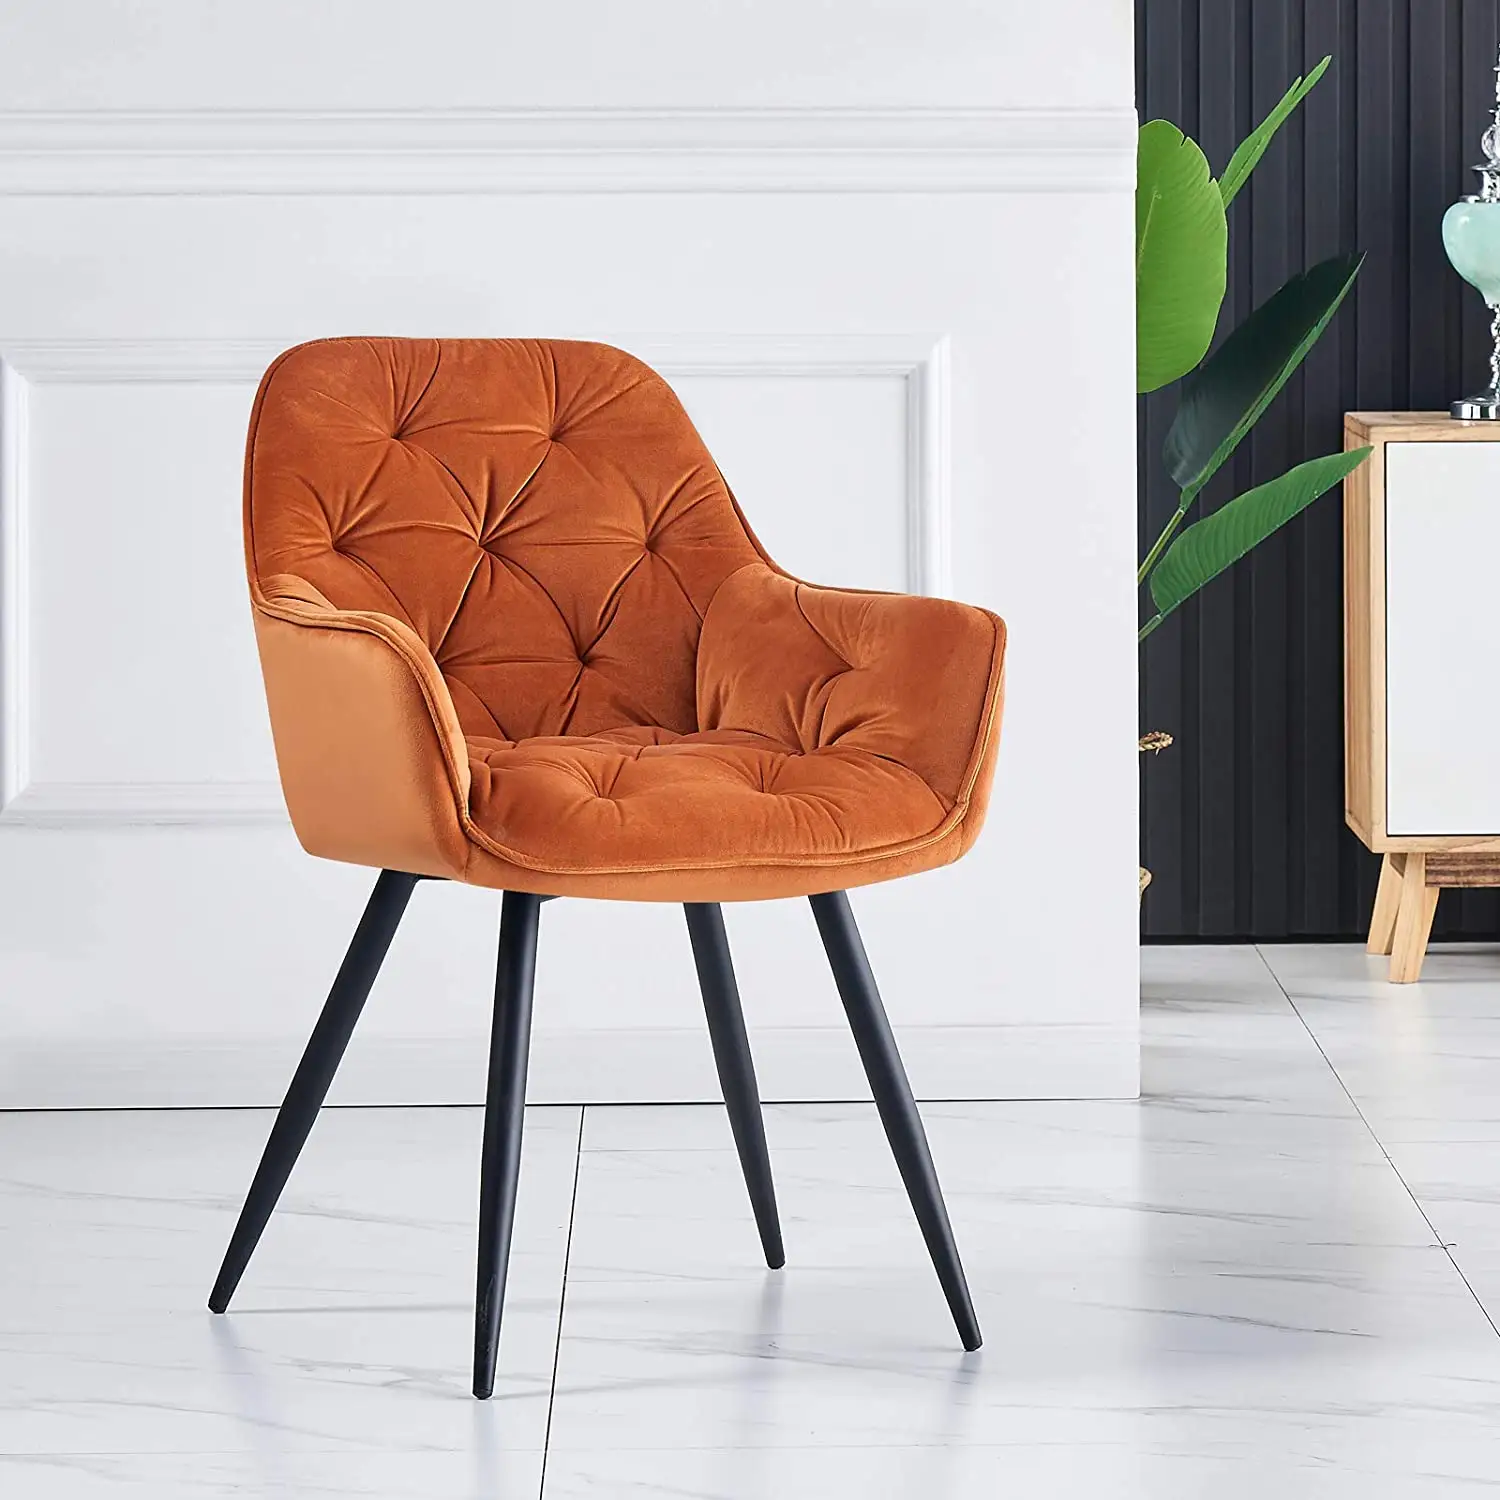 Nouveau design moderne épais rembourré siège baignoire rembourrée tissu orange velours chaise de salle à manger